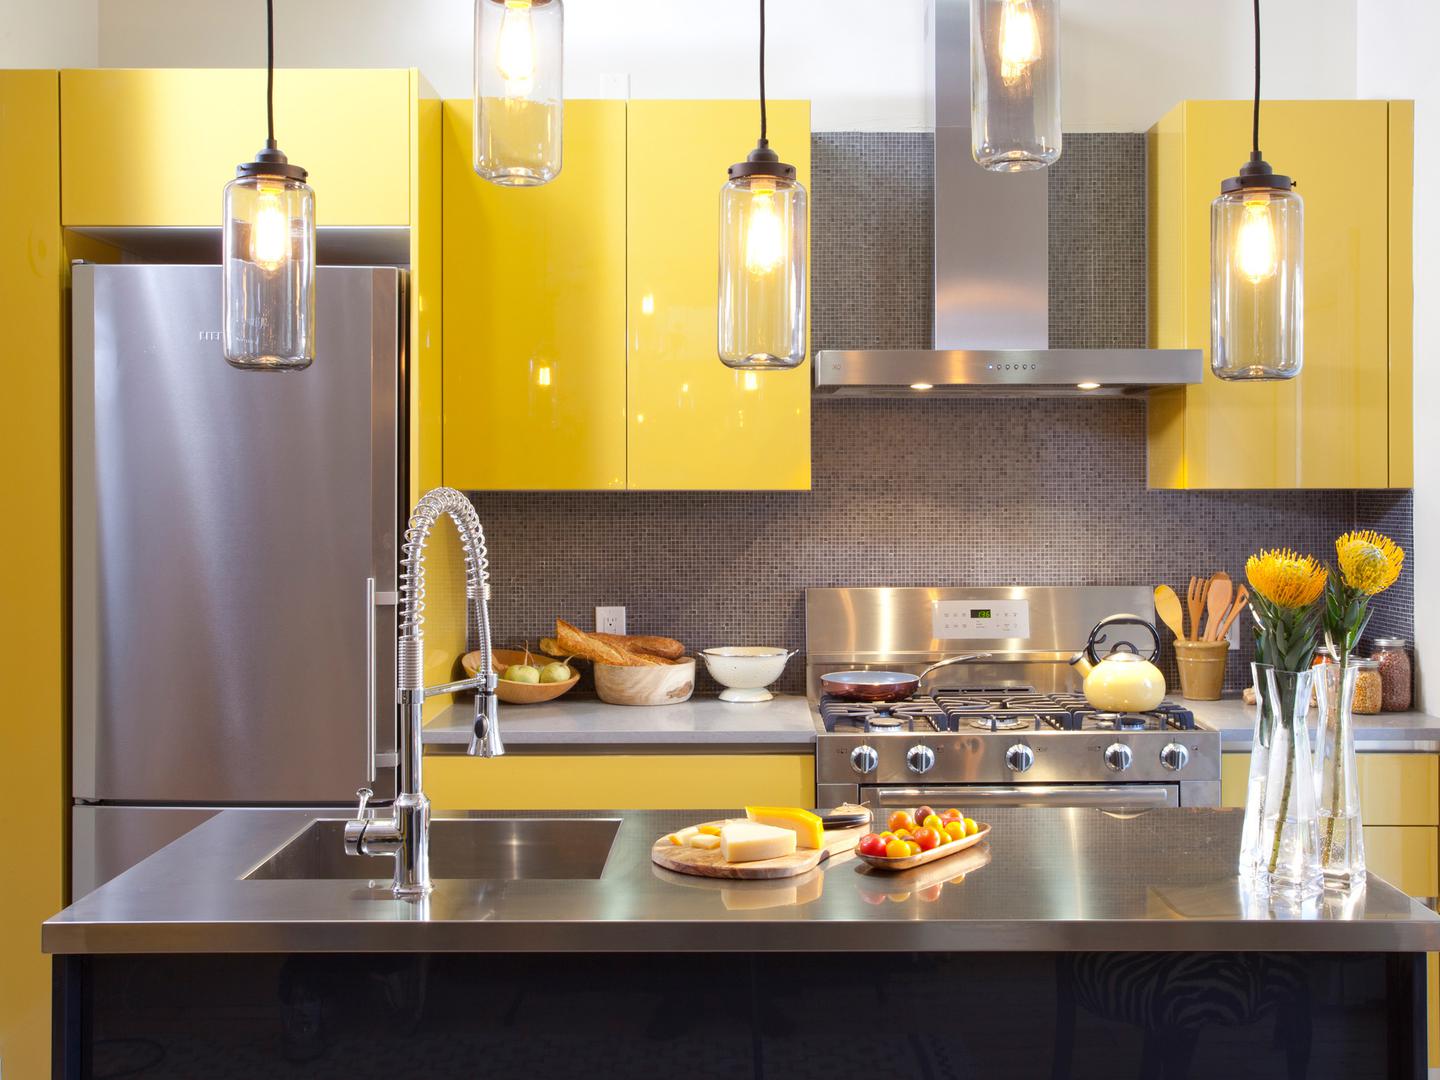 Žuta kuhinja u visokom sjajnu dat će stanu poseban šarm